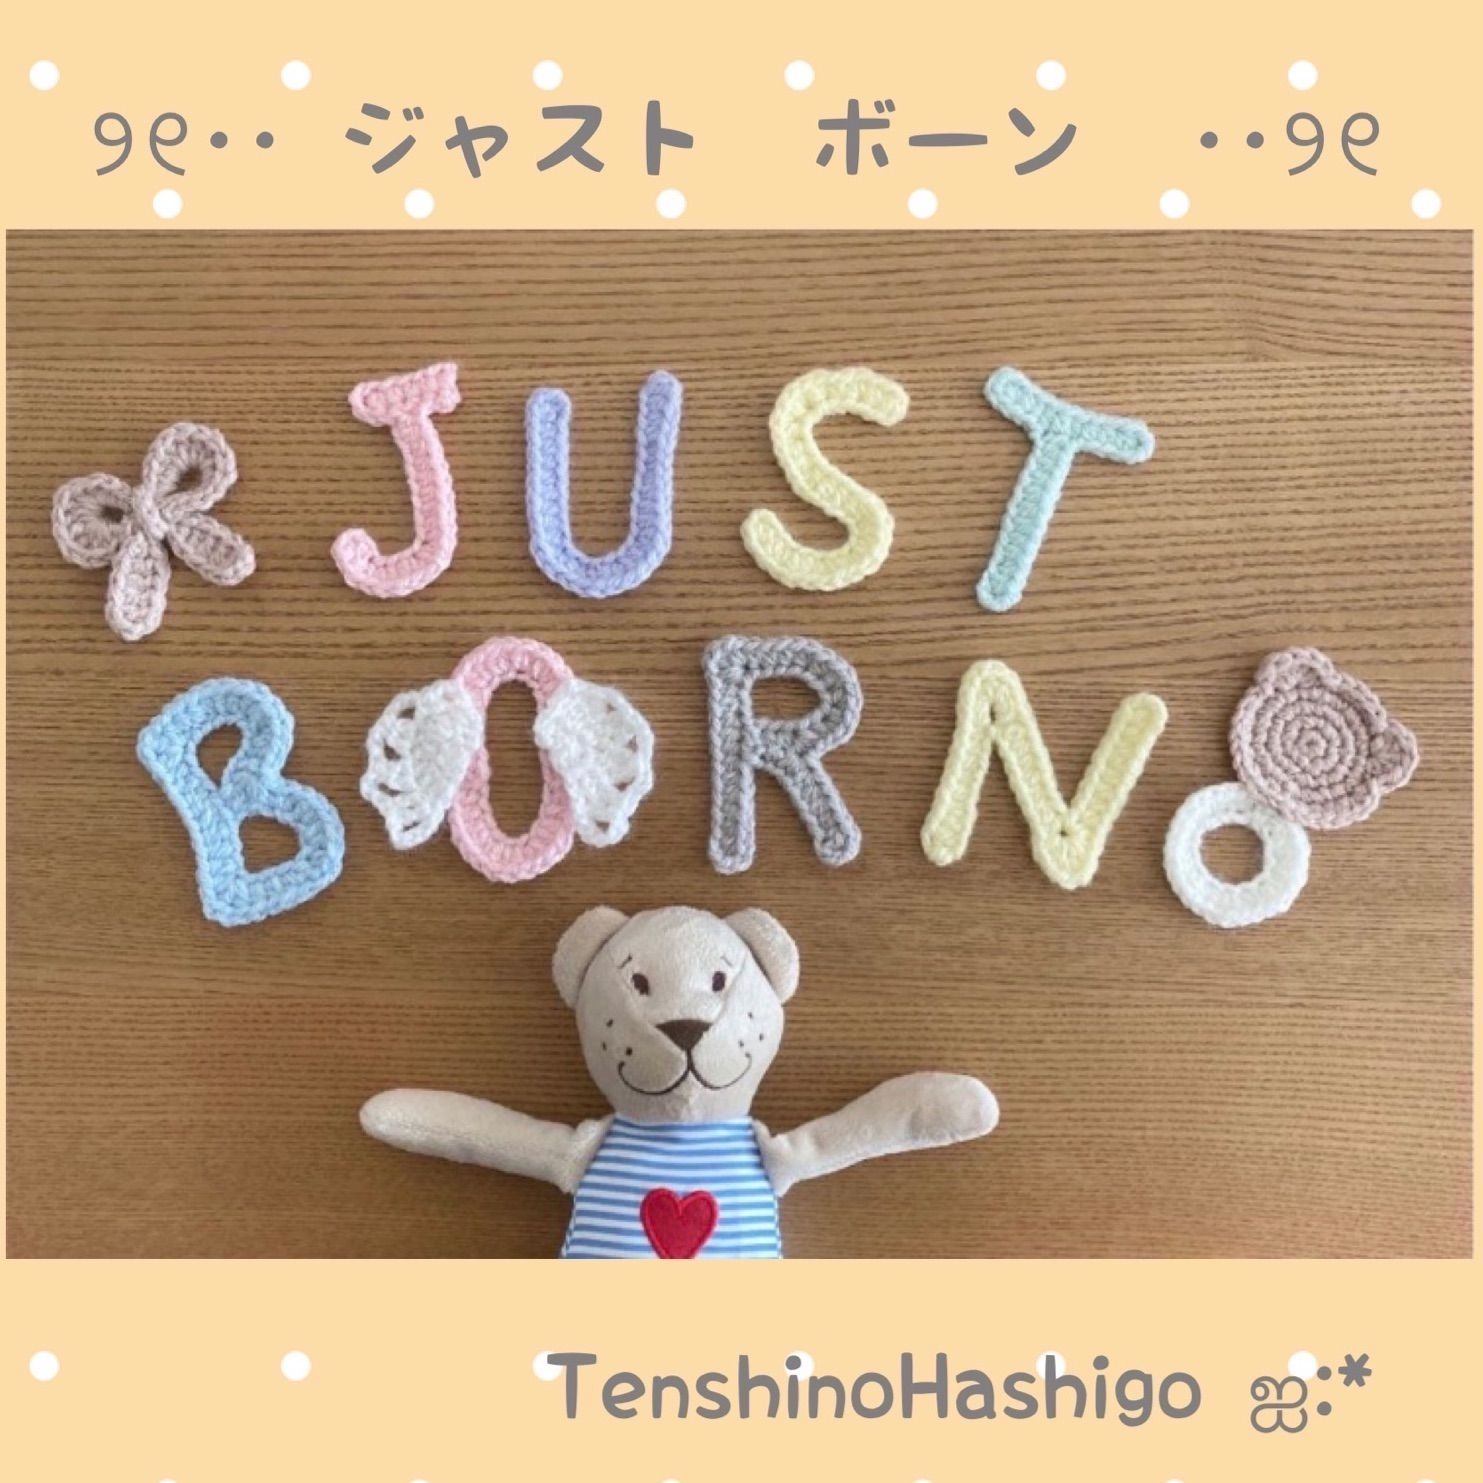 ジャストボーン just born オーナメント - TenshinoHashigo ஐ